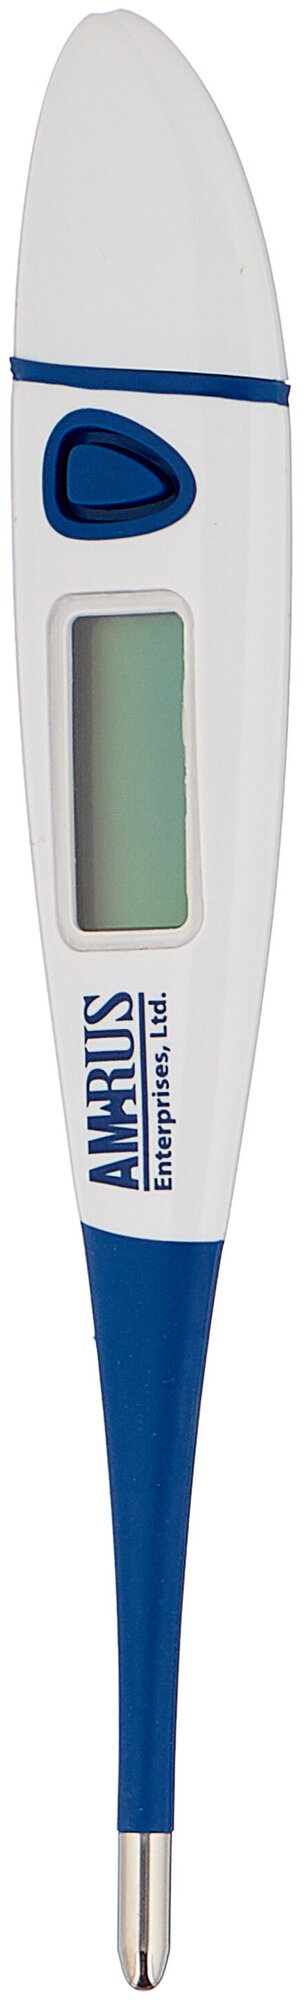 Термометр Amrus AMDT-11